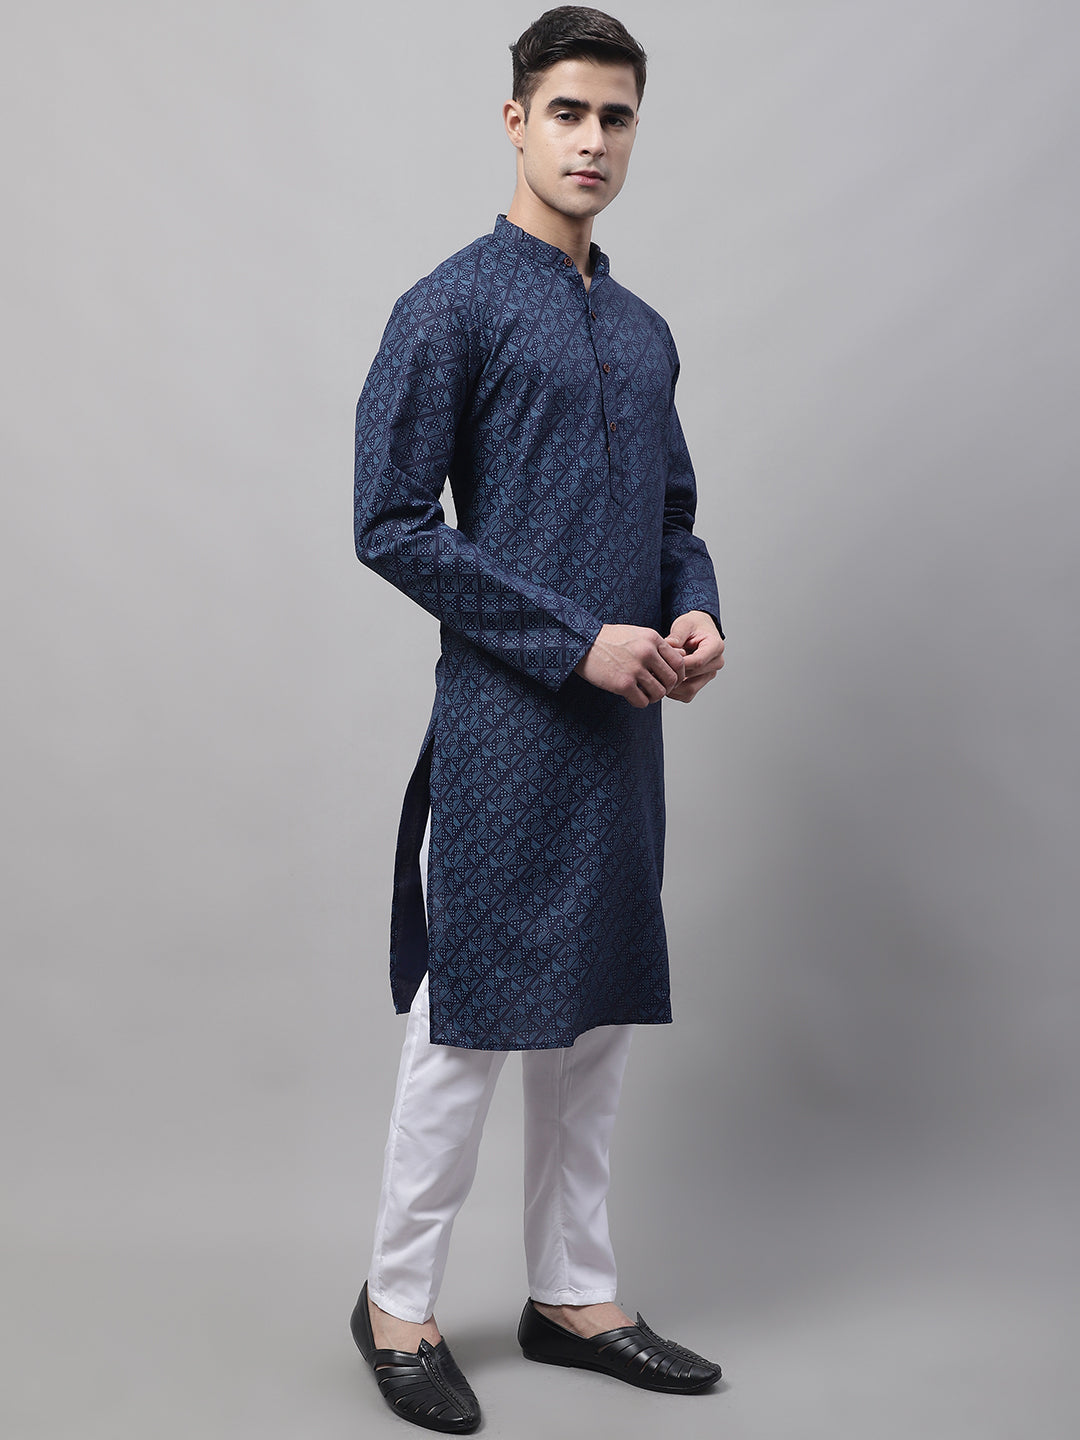 Men's Navy Blue Printed Pure Cotton Kurta Payjama Set